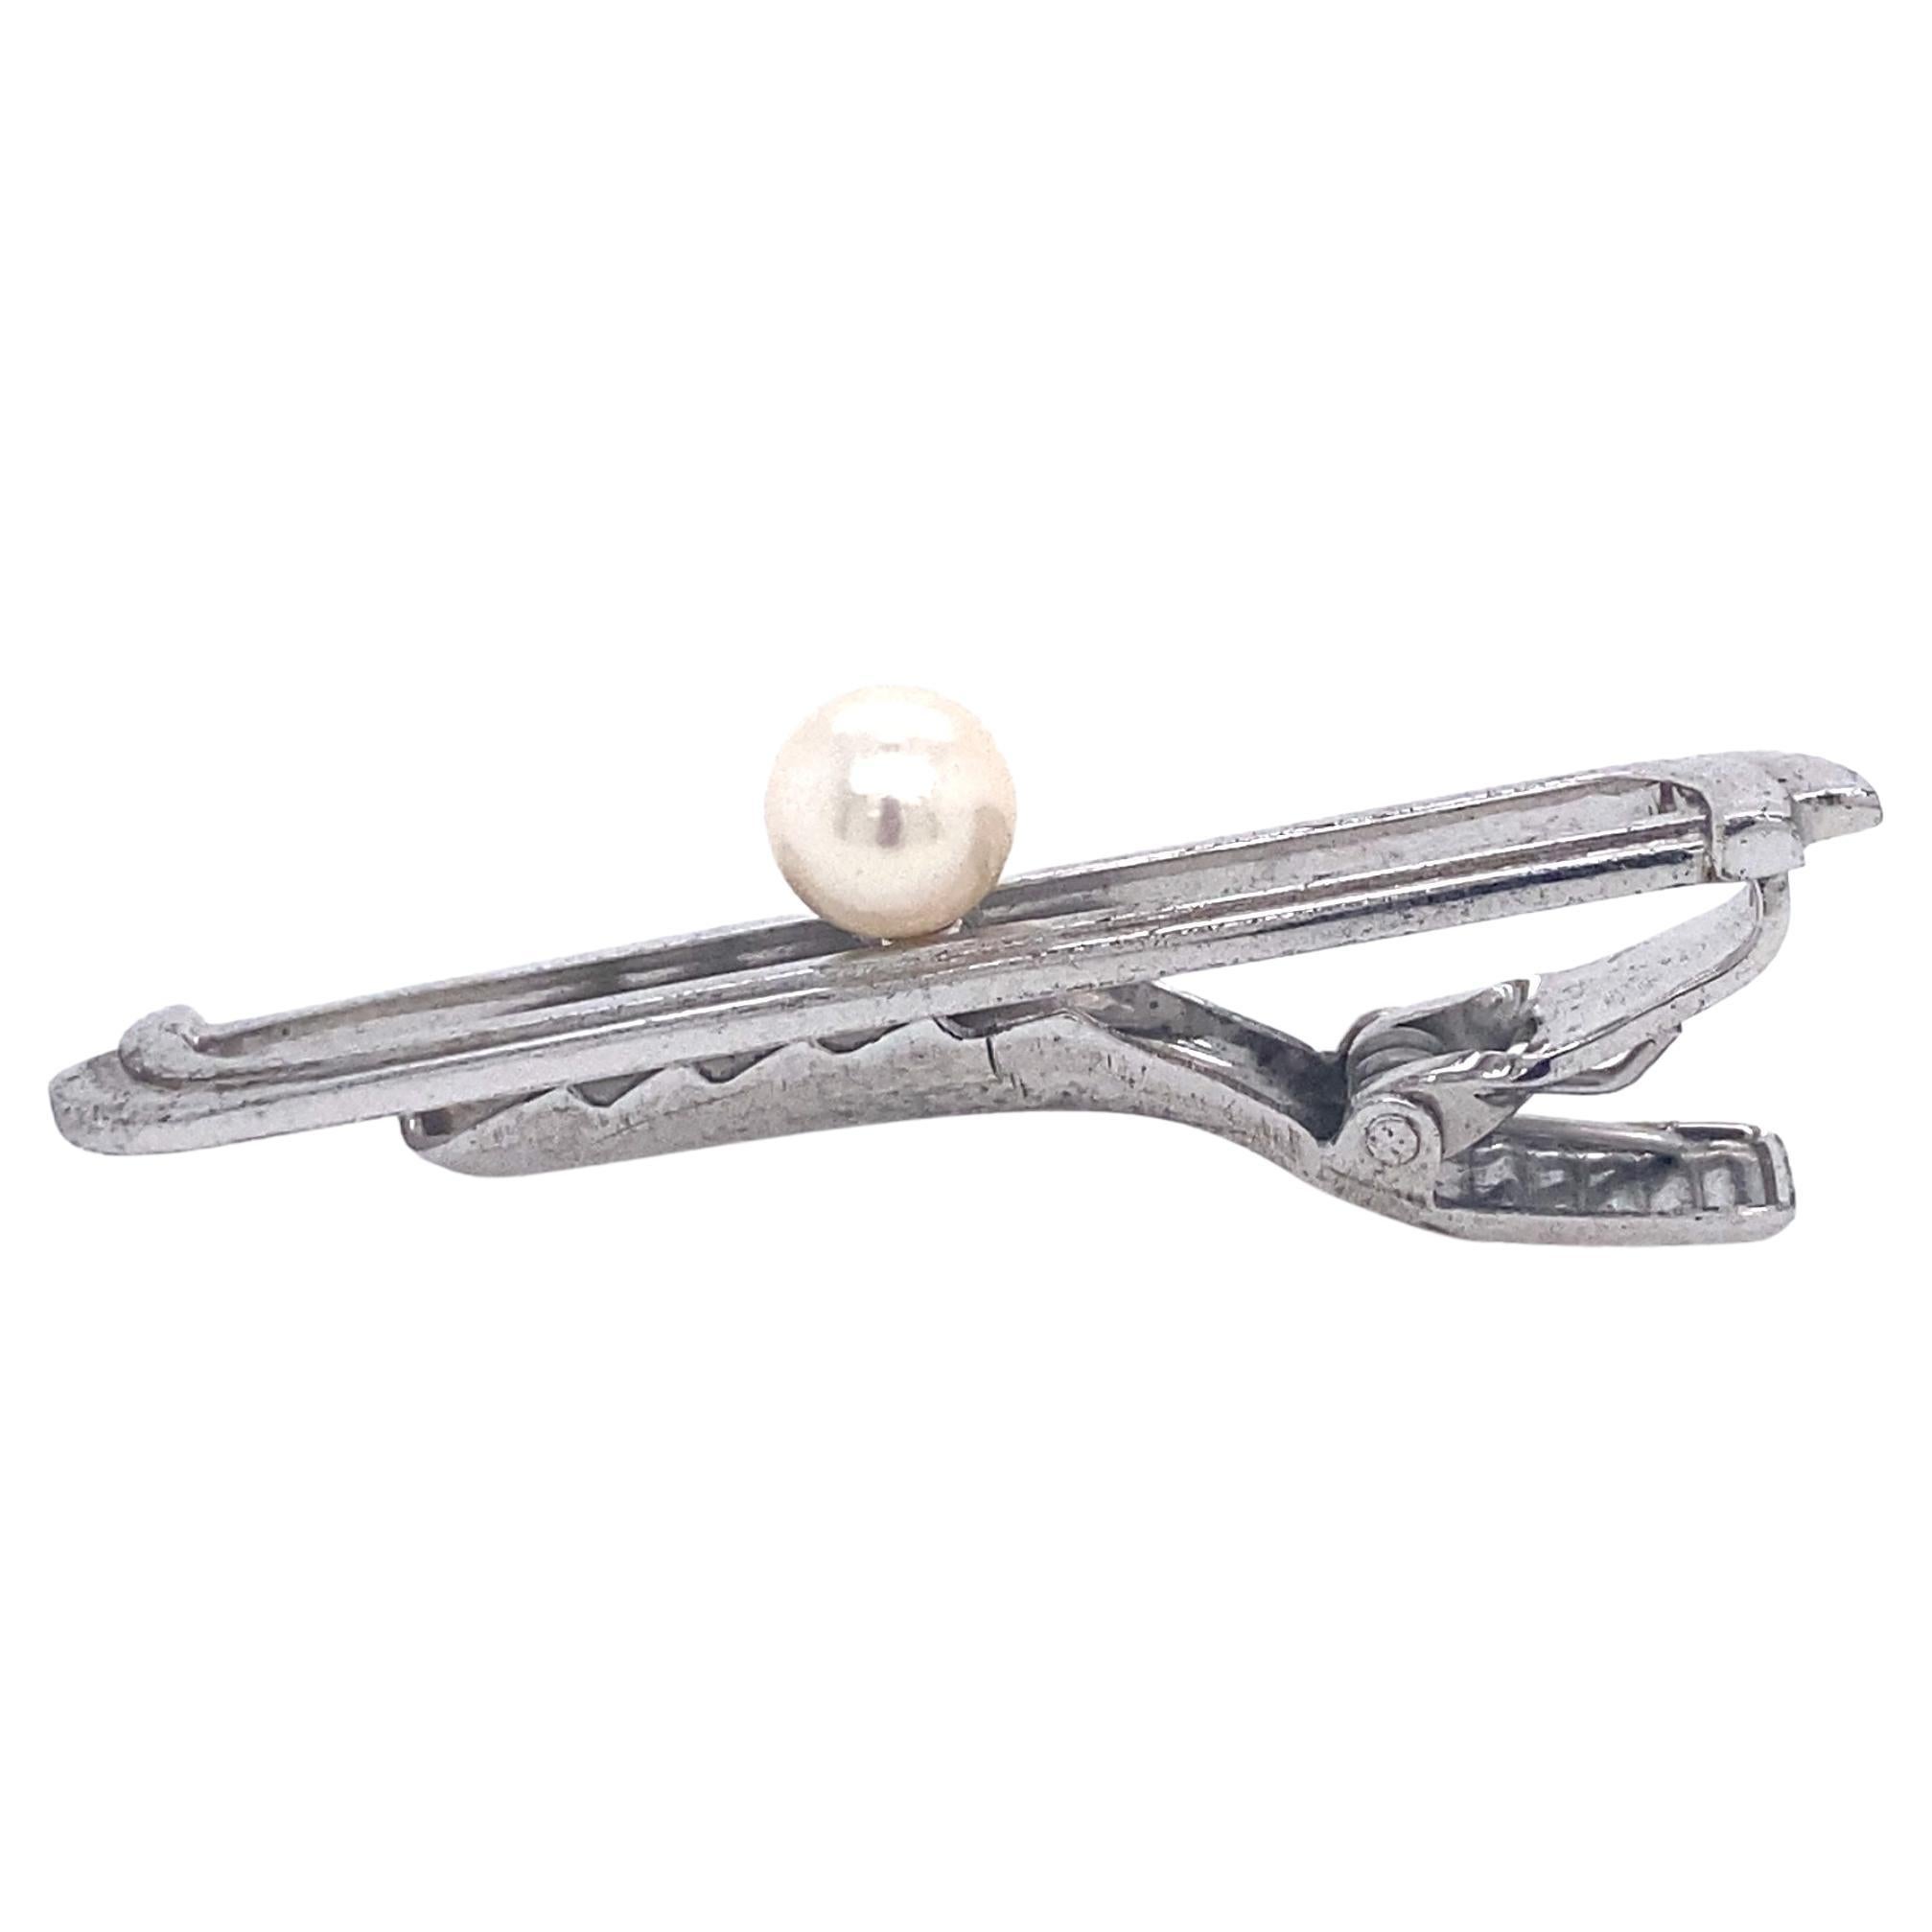 Barrette de cravate en argent sterling avec perle Akoya du domaine Mikimoto 6.73 mm 5.91 Grammes M172

Cet élégant porte-cravate en perles Akoya authentiques du Domaine Mikimoto est fabriqué en argent sterling et contient une perle de culture Akoya